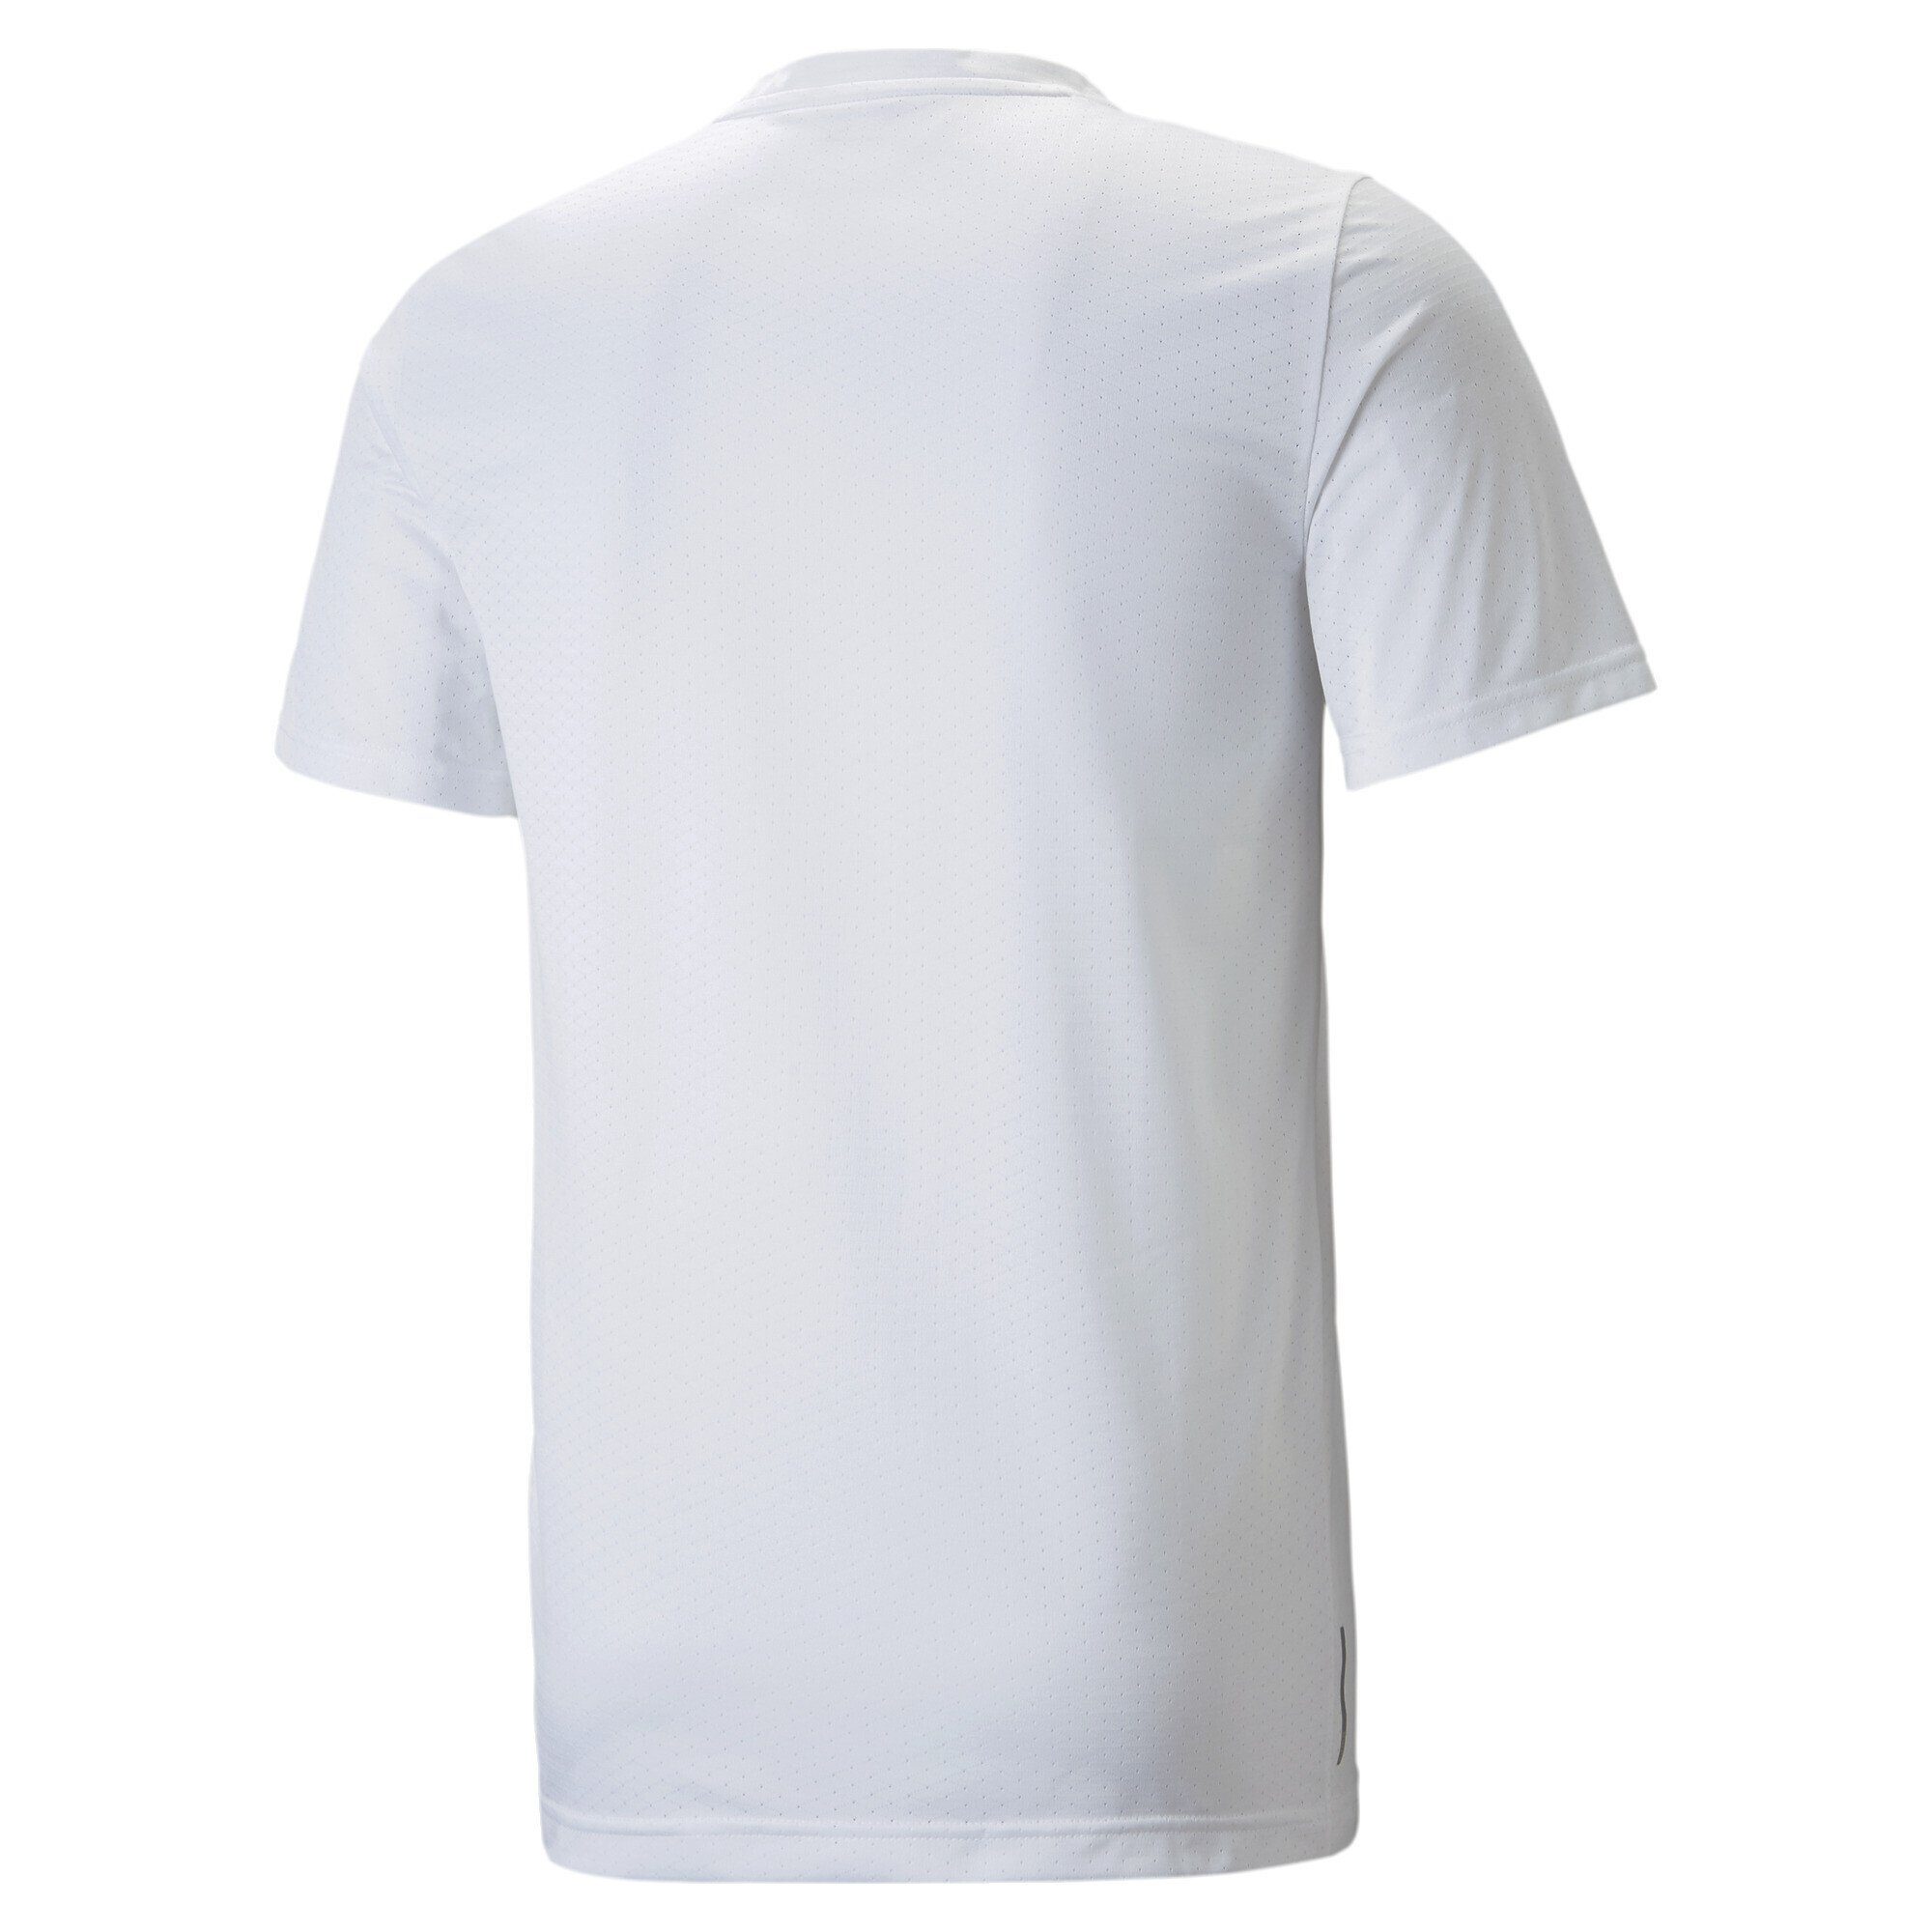 Trainingsshirt White PUMA Trainingsshirt Favourite Herren Blaster